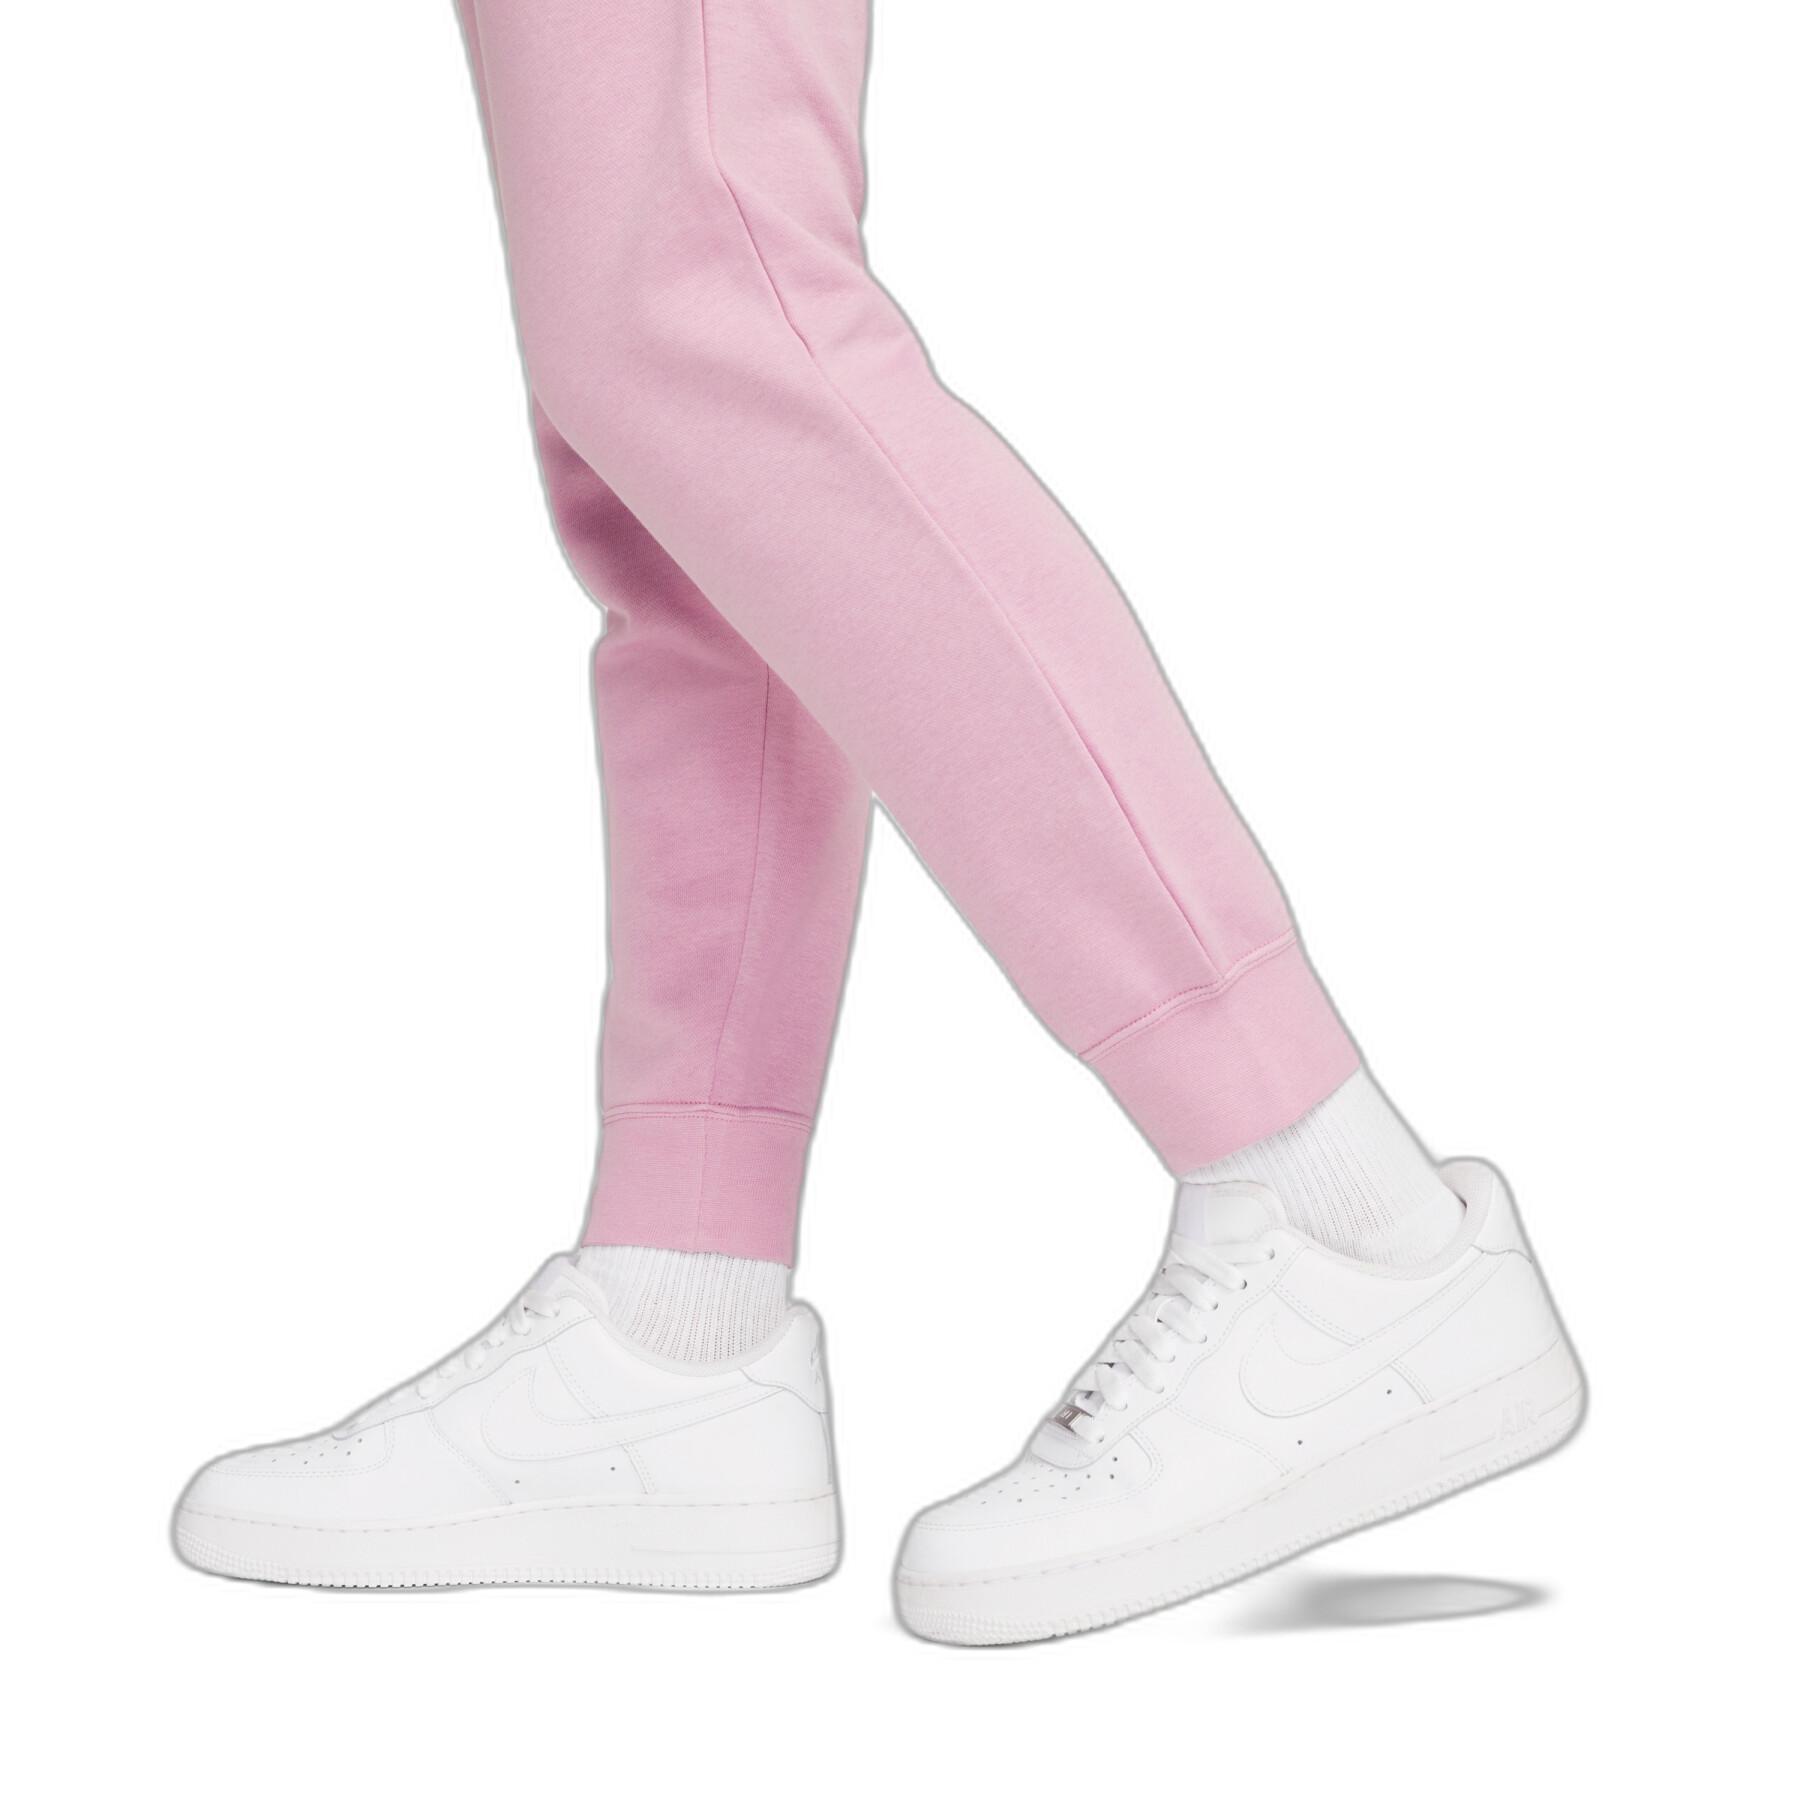 Dames fleece joggingpak Nike Sportswear Essential